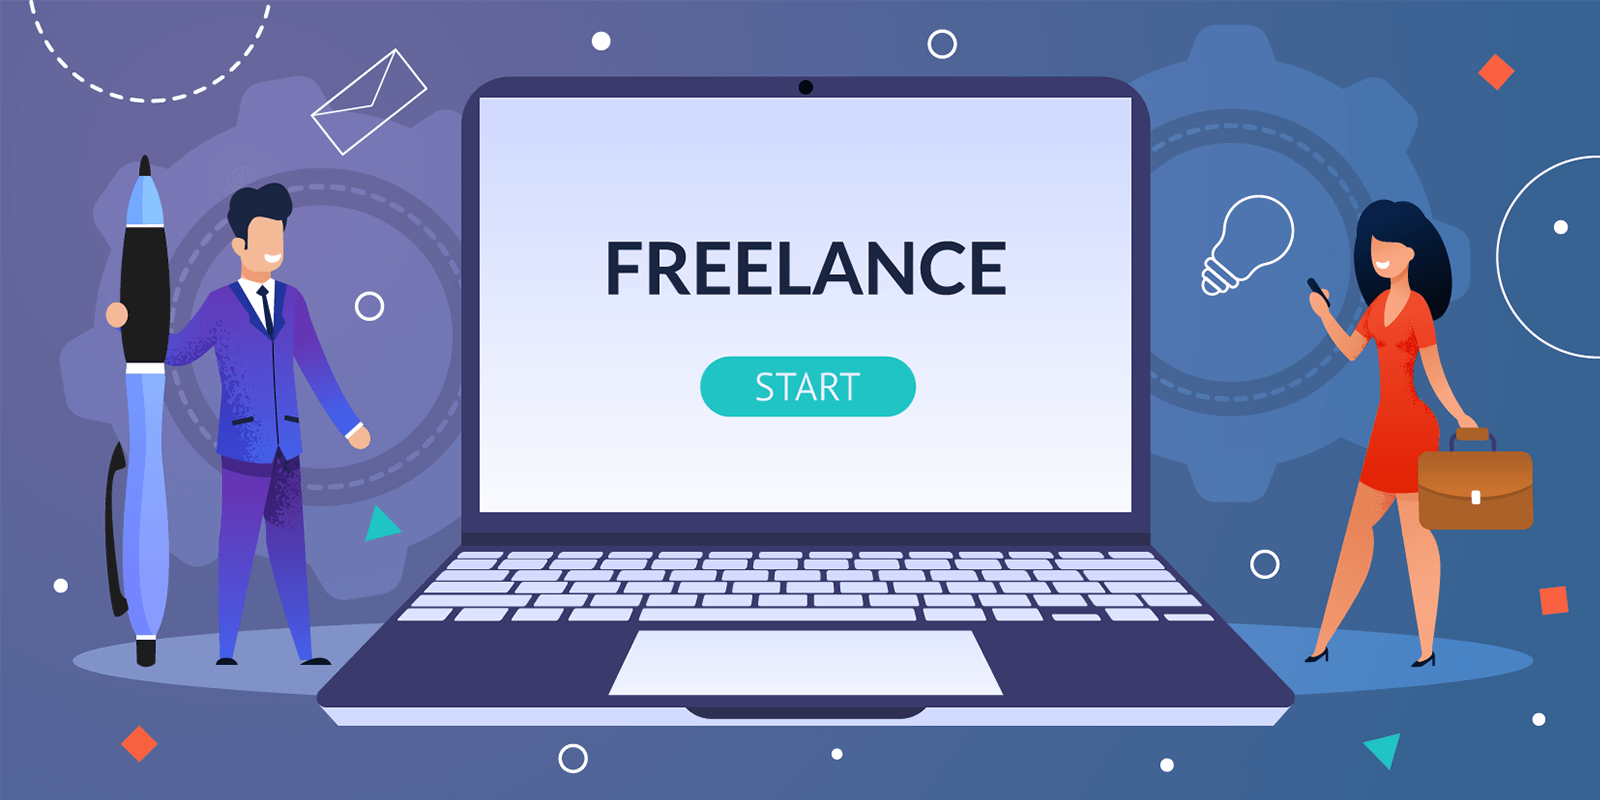 Start freelance